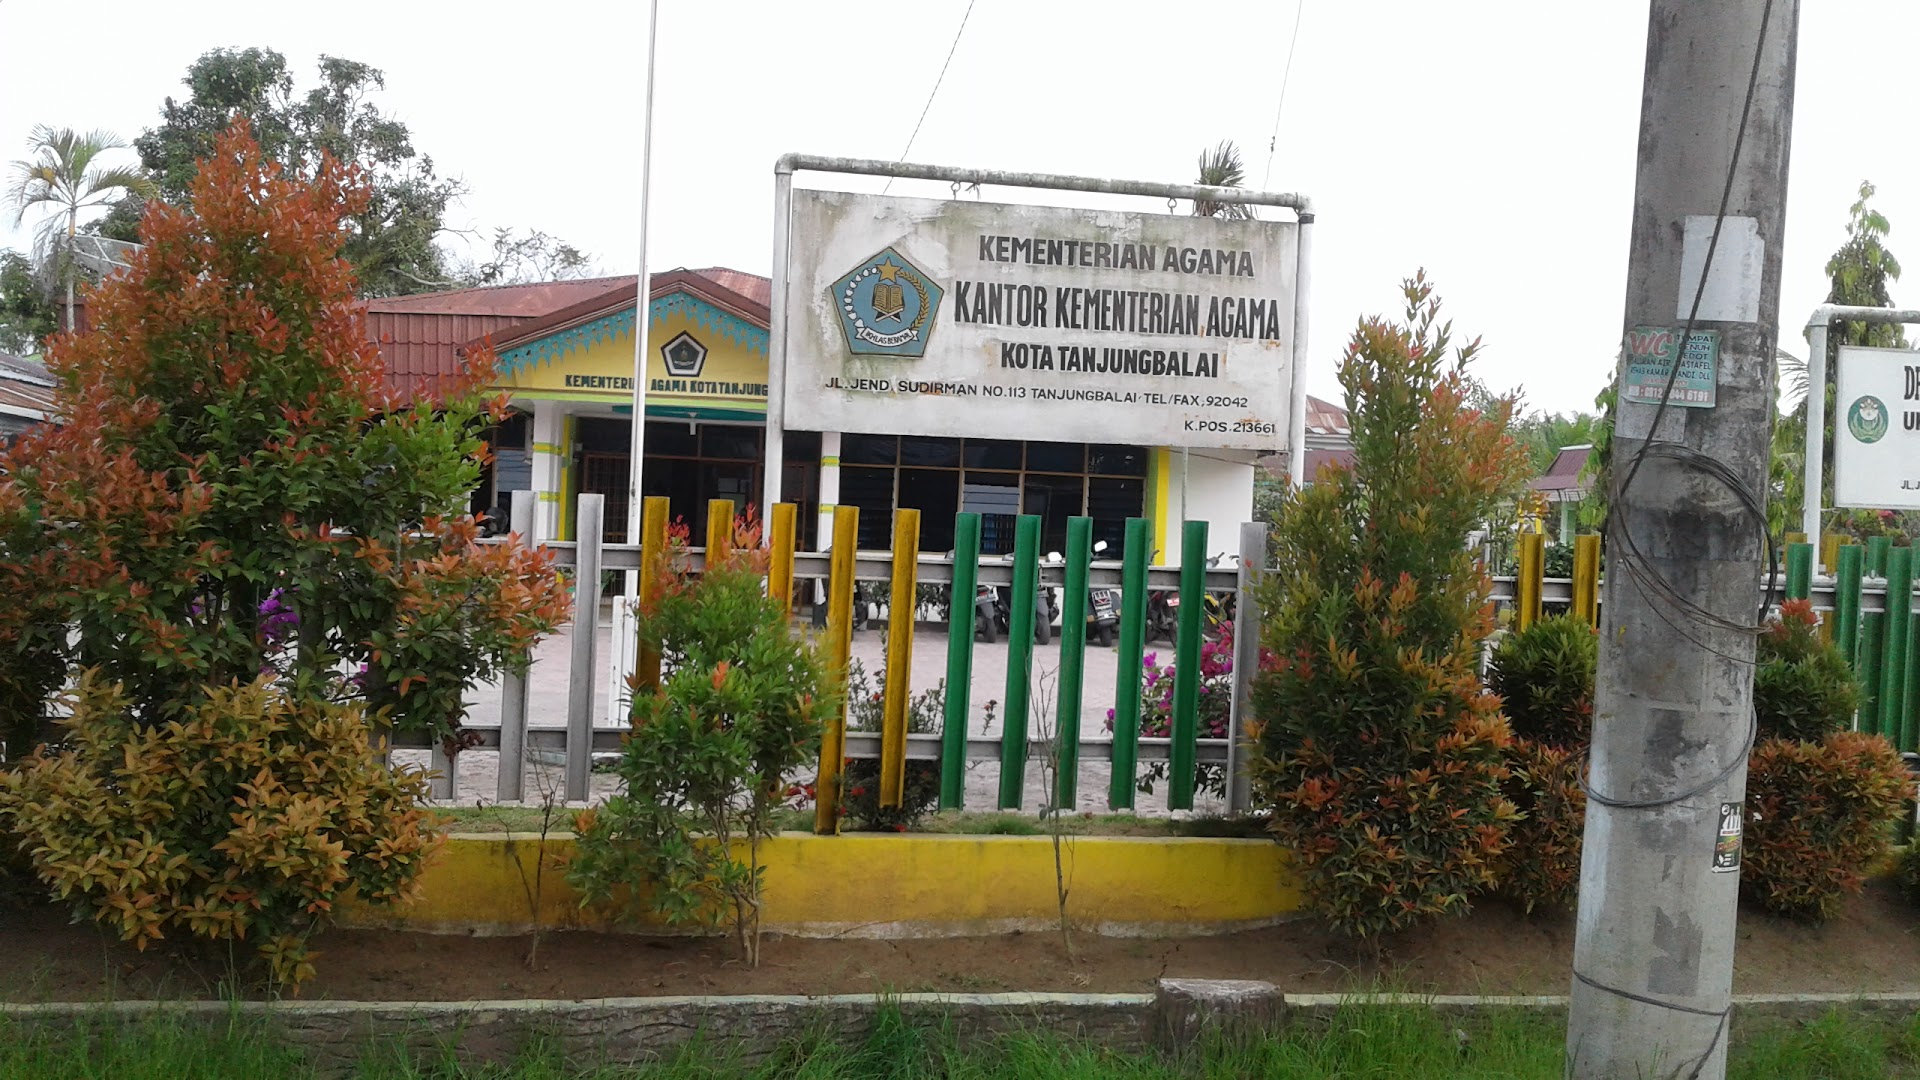 Kantor Kementerian Agama Kota Tanjung Balai Photo